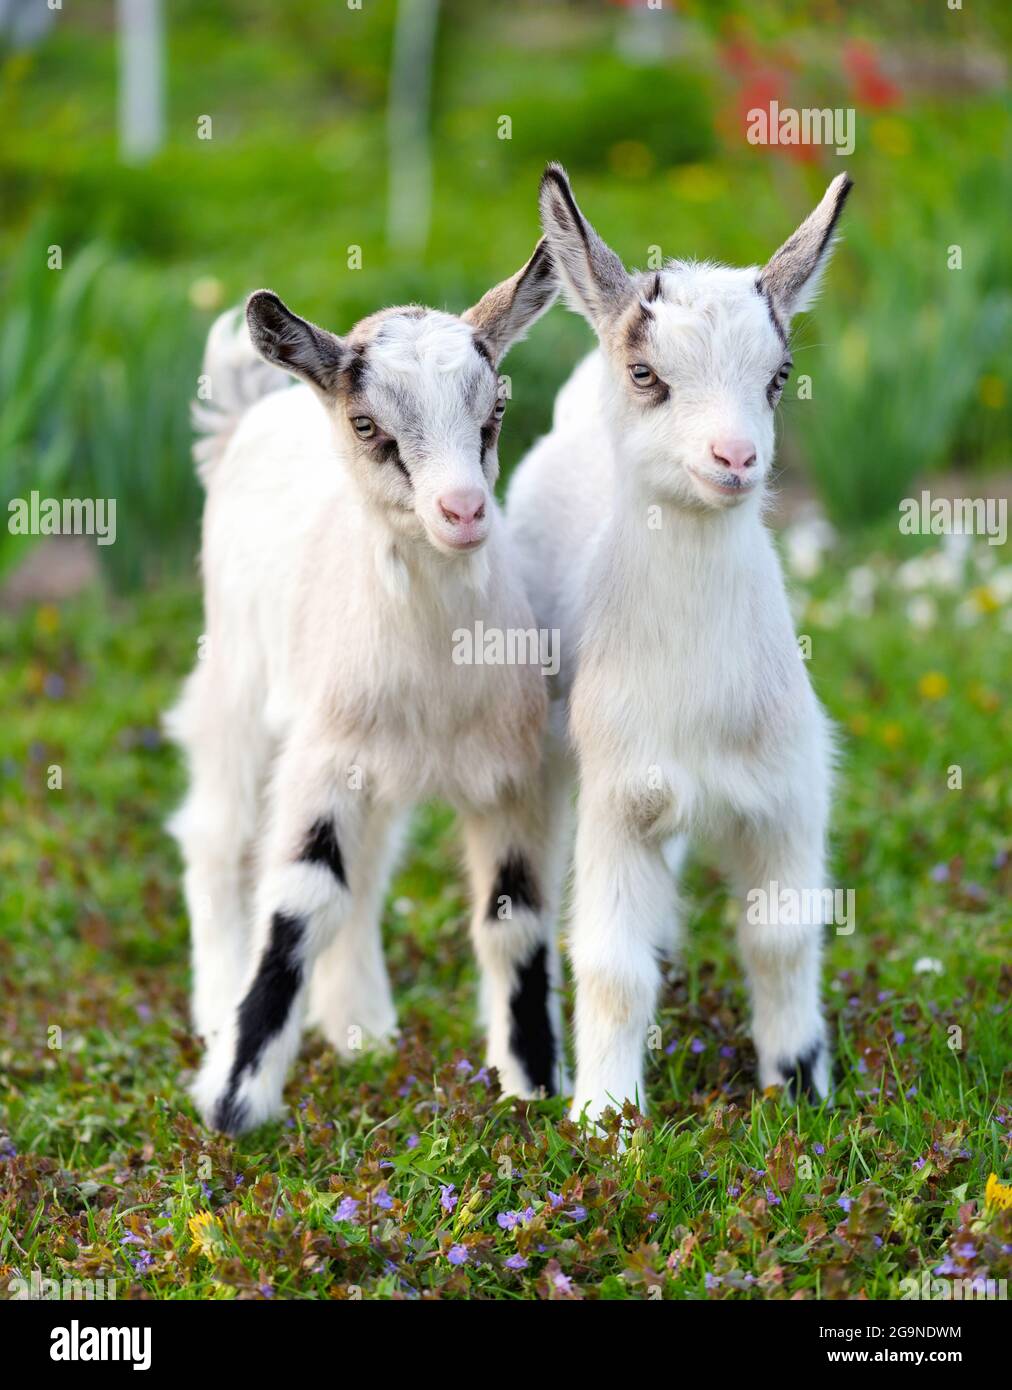 Zwei weiße Babyziegen stehen auf grünem Rasen Stockfoto